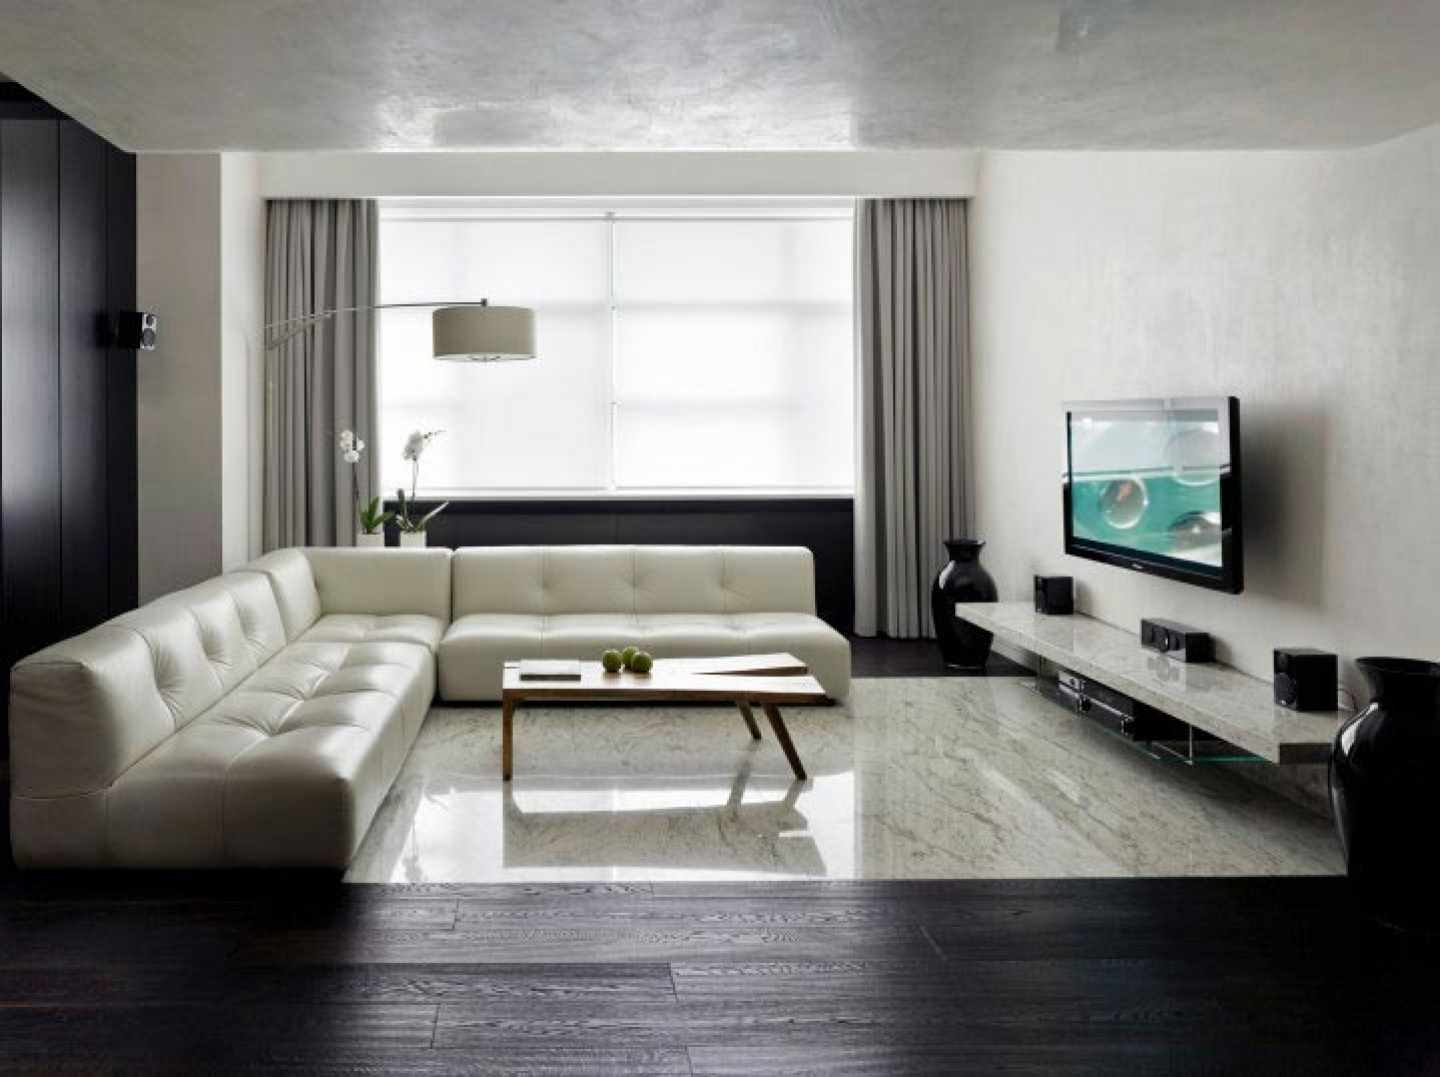 một ví dụ về việc sử dụng thiết kế sáng sủa của phòng khách theo phong cách tối giản